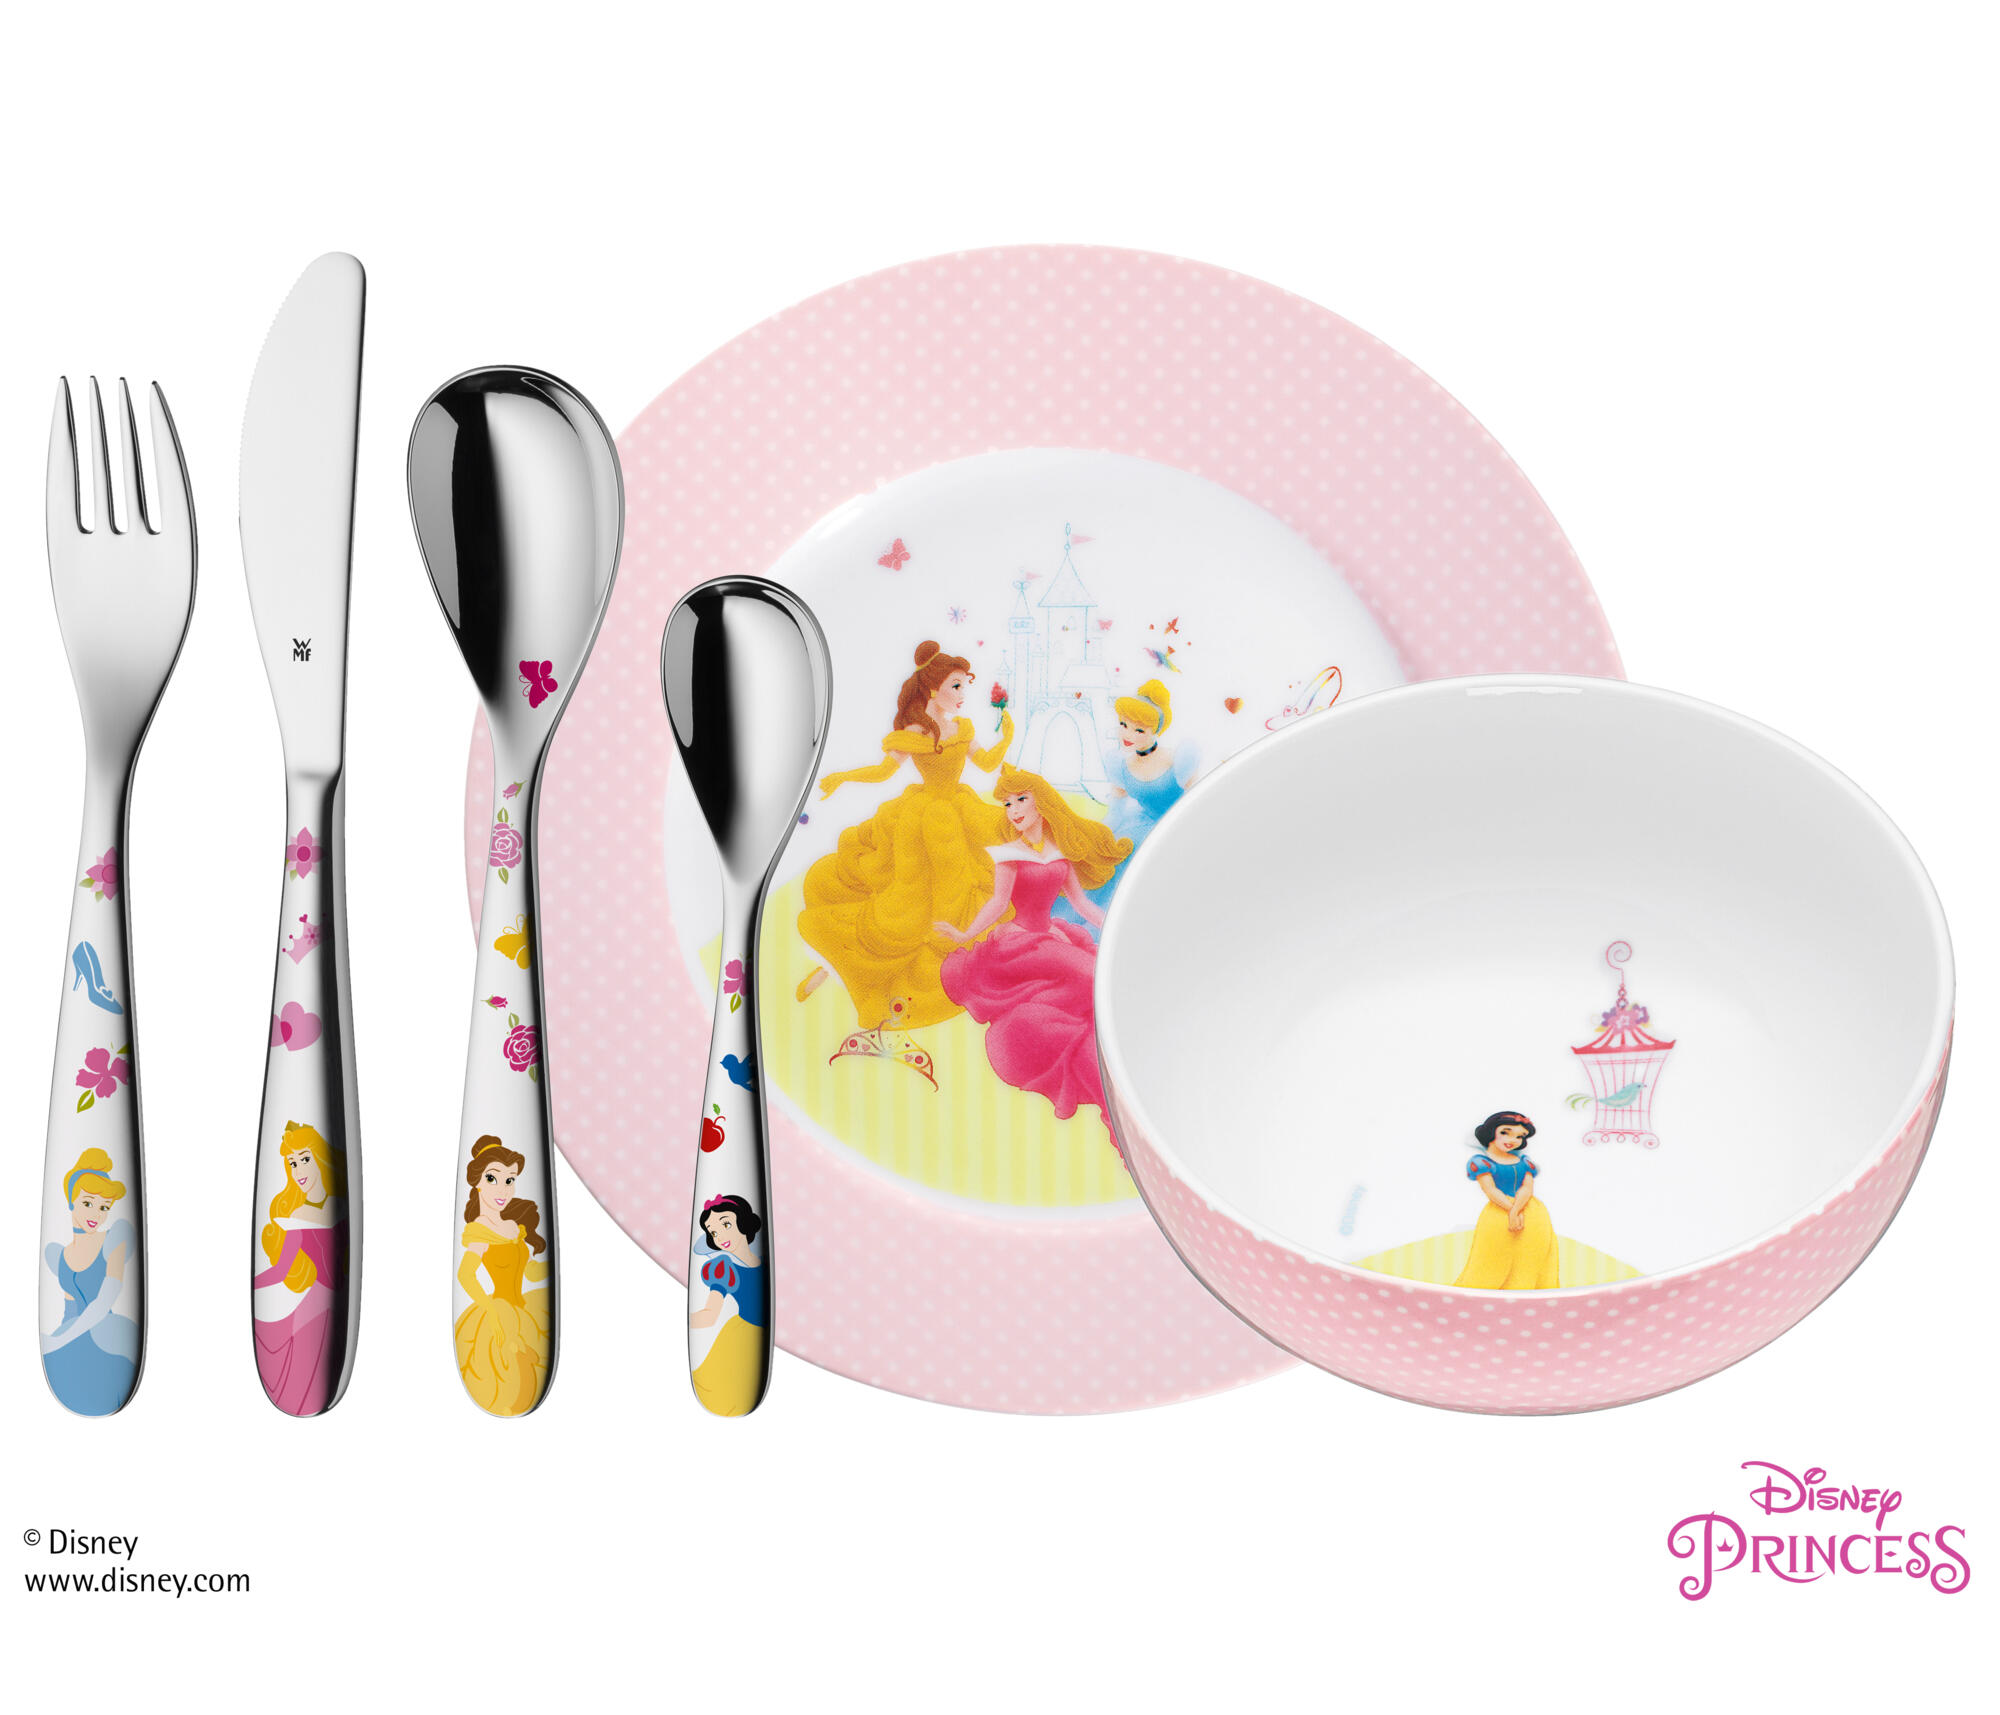 Disney Princess Cinderella & Belle Fork & Spoon Set BPA Free NEW IN PACKAGE!!! 